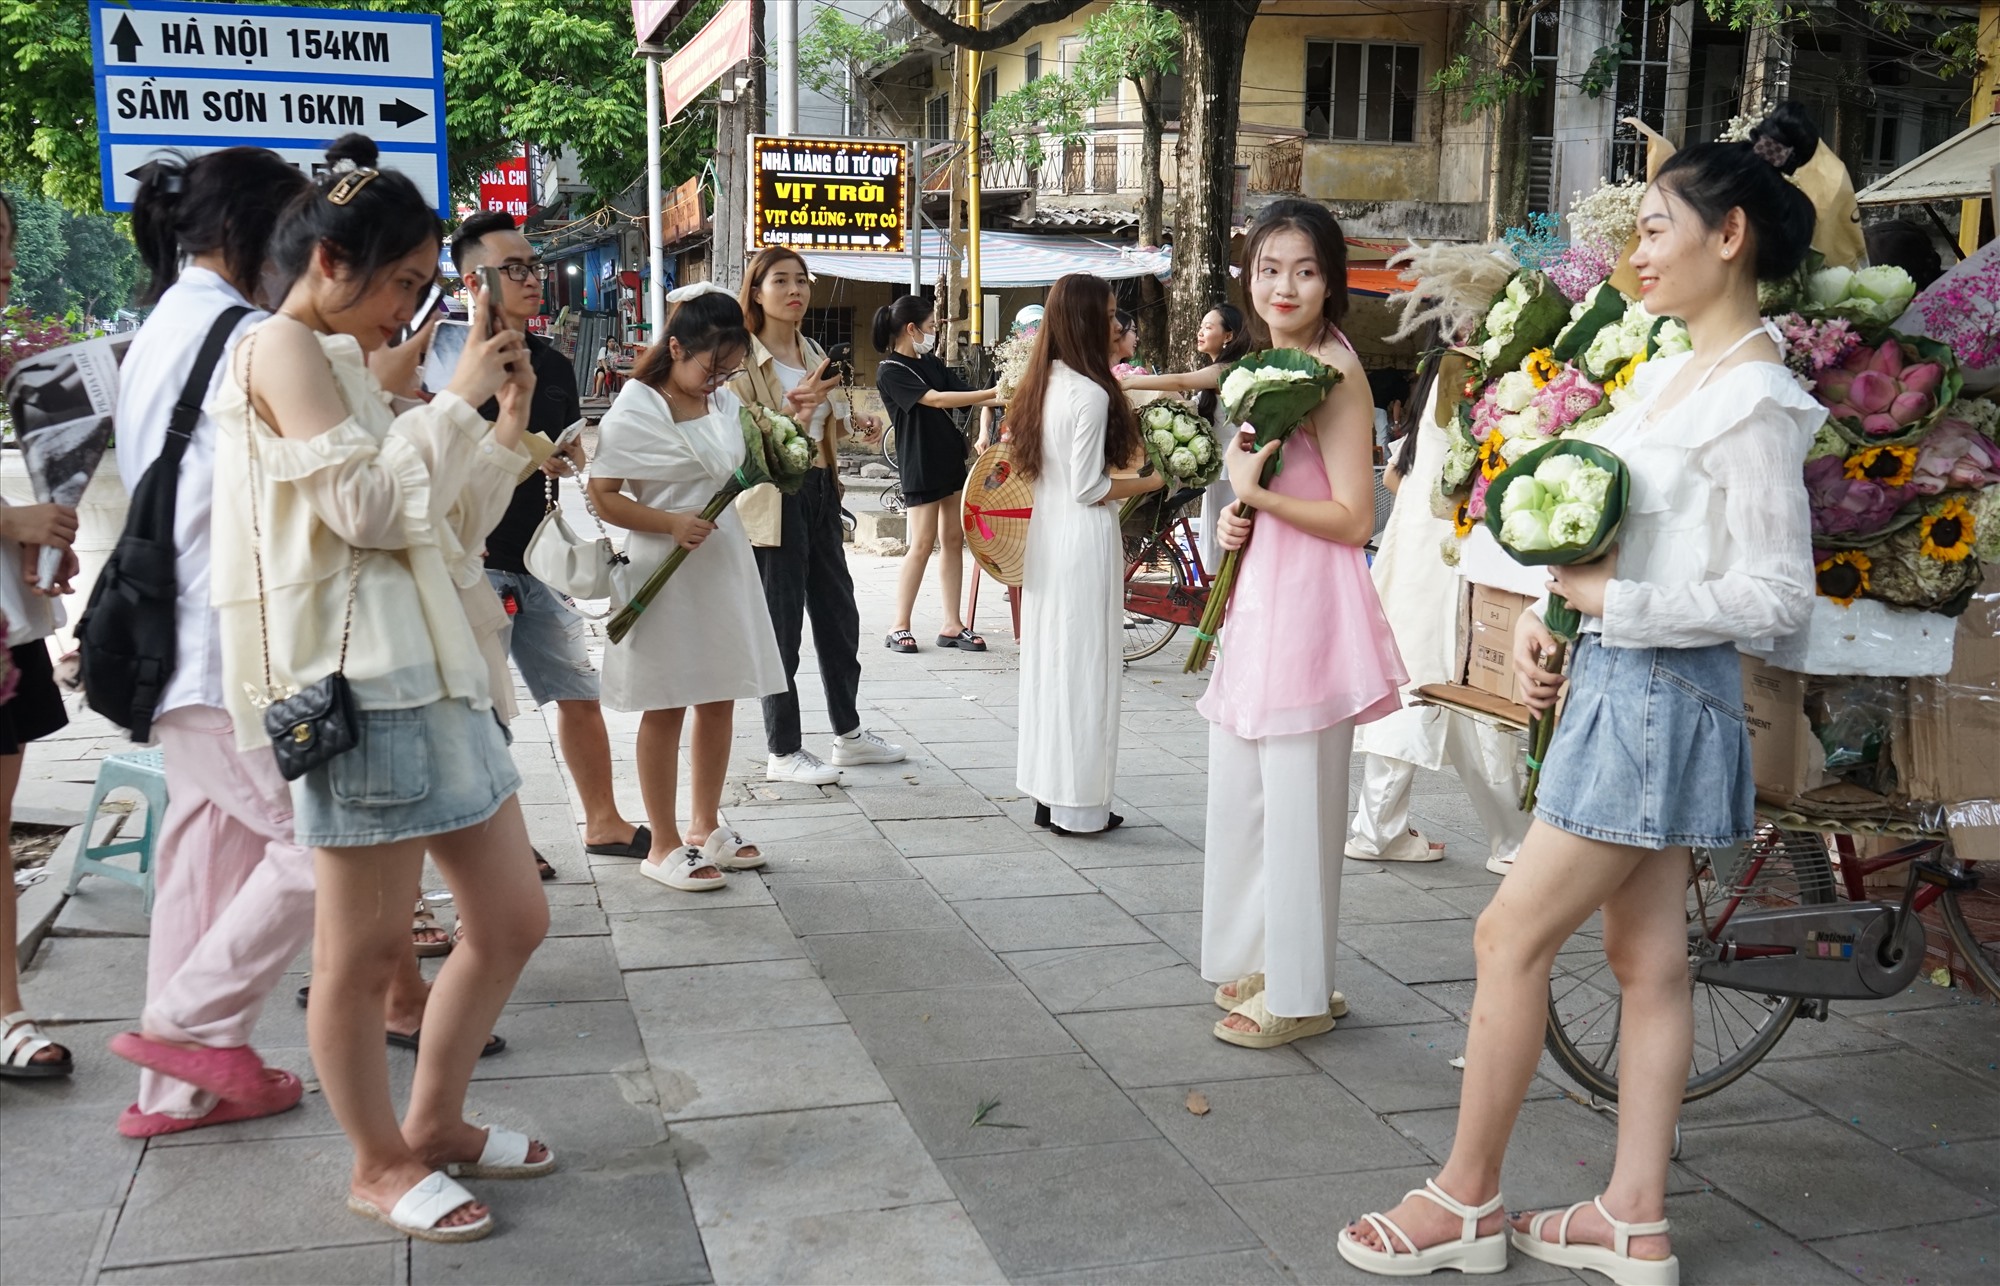 Bối cảnh thu Hà Nội (phiên bản Thanh Hóa) được một số cá nhân dựng lên với những xe hoa có đủ các loài hoa của mùa thu. 